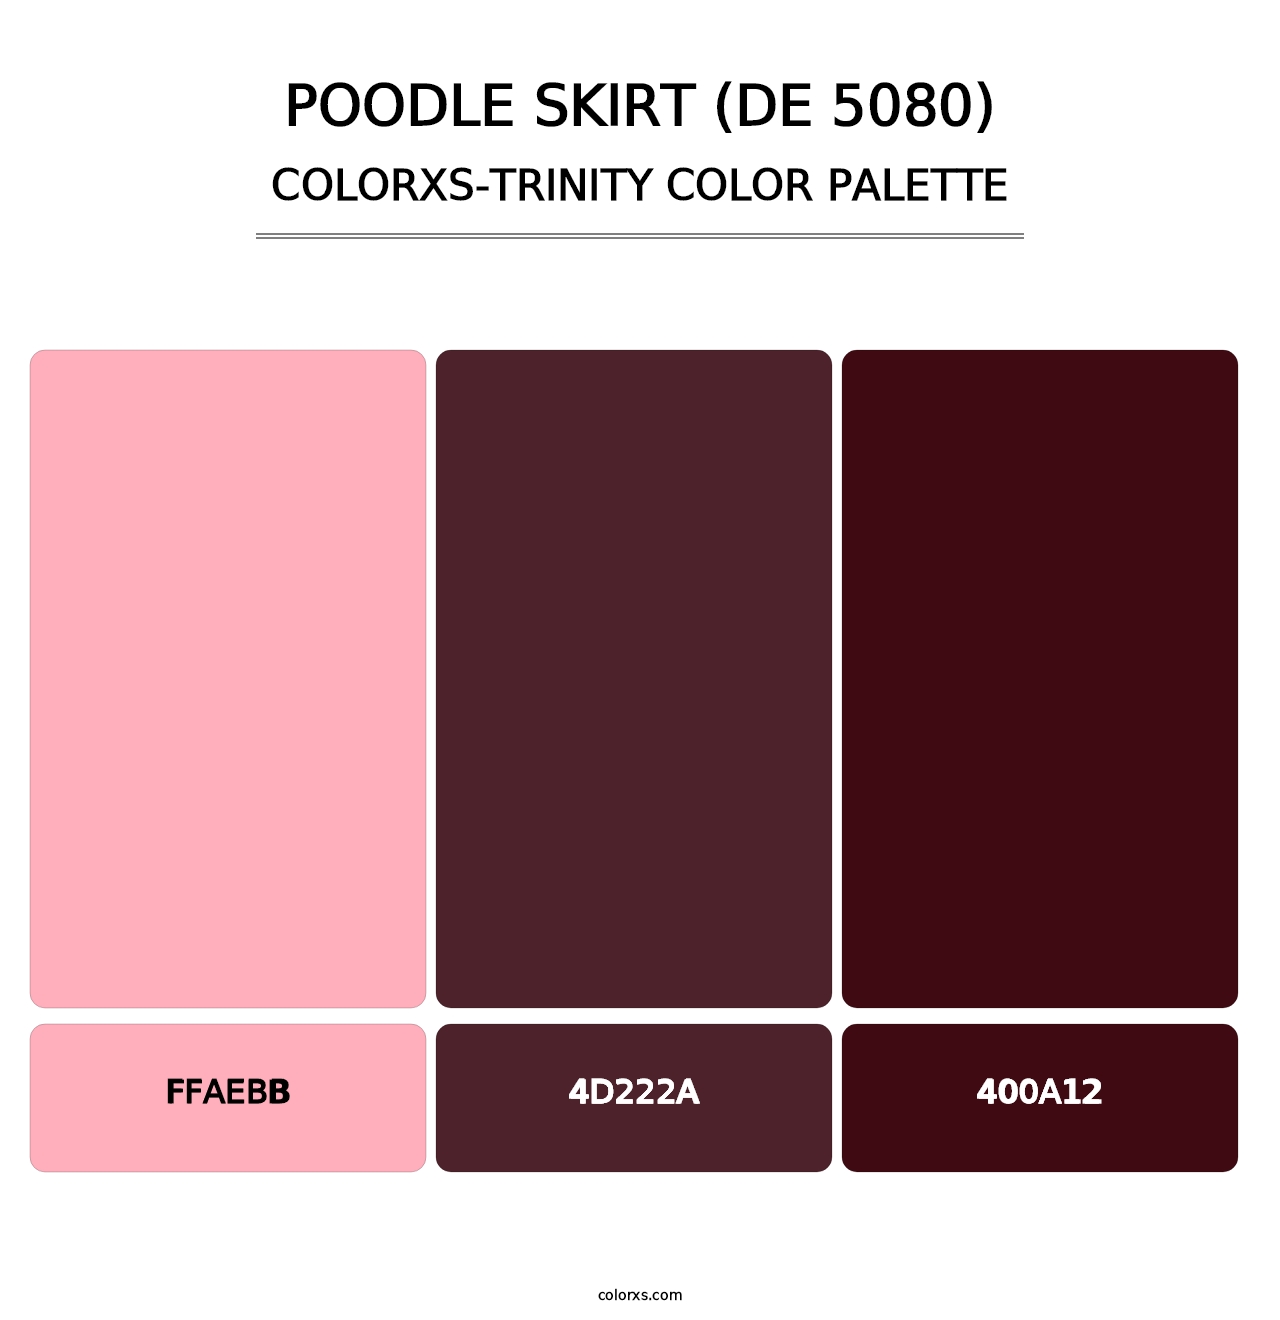 Poodle Skirt (DE 5080) - Colorxs Trinity Palette